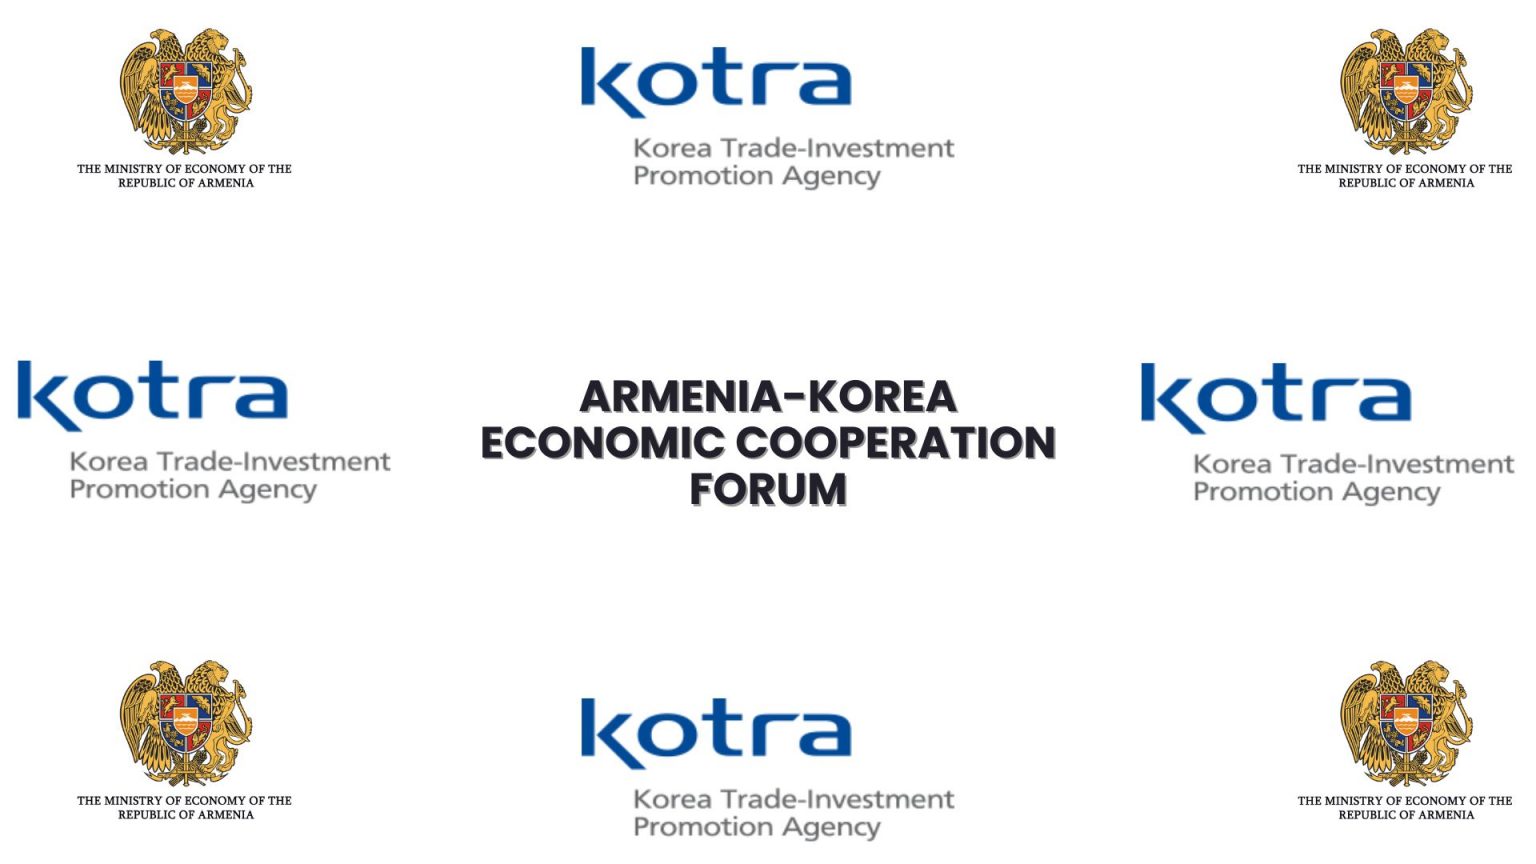 Երևանում տեղի կունենա հայ-կորեական տնտեսական համագործակցության համաժողով